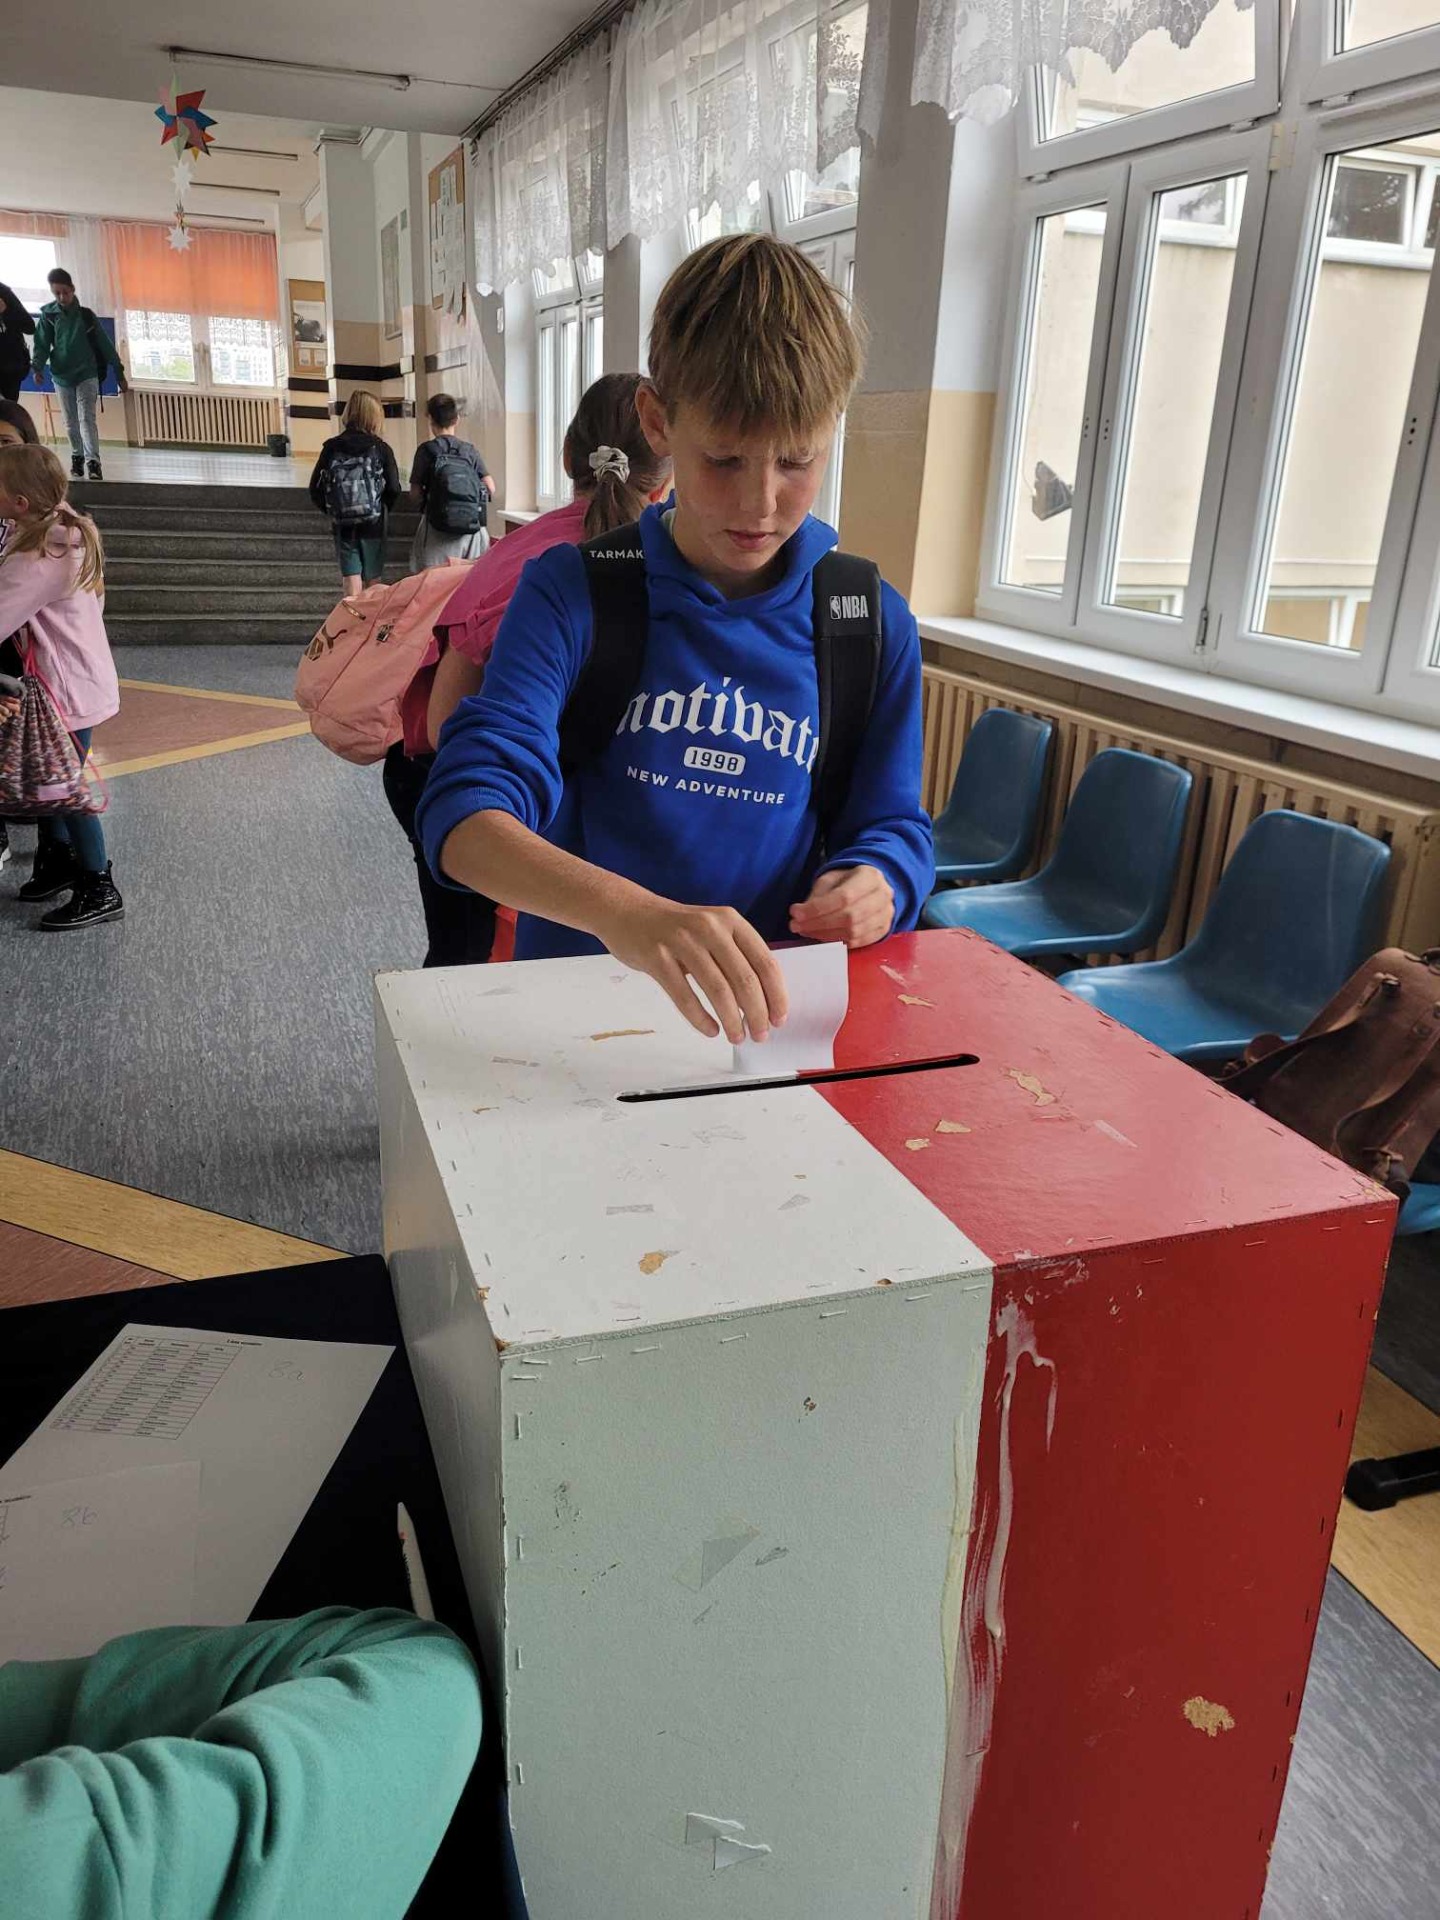 Dzieci głosują na przewodniczącego Samorządu Uczniowskiego. 